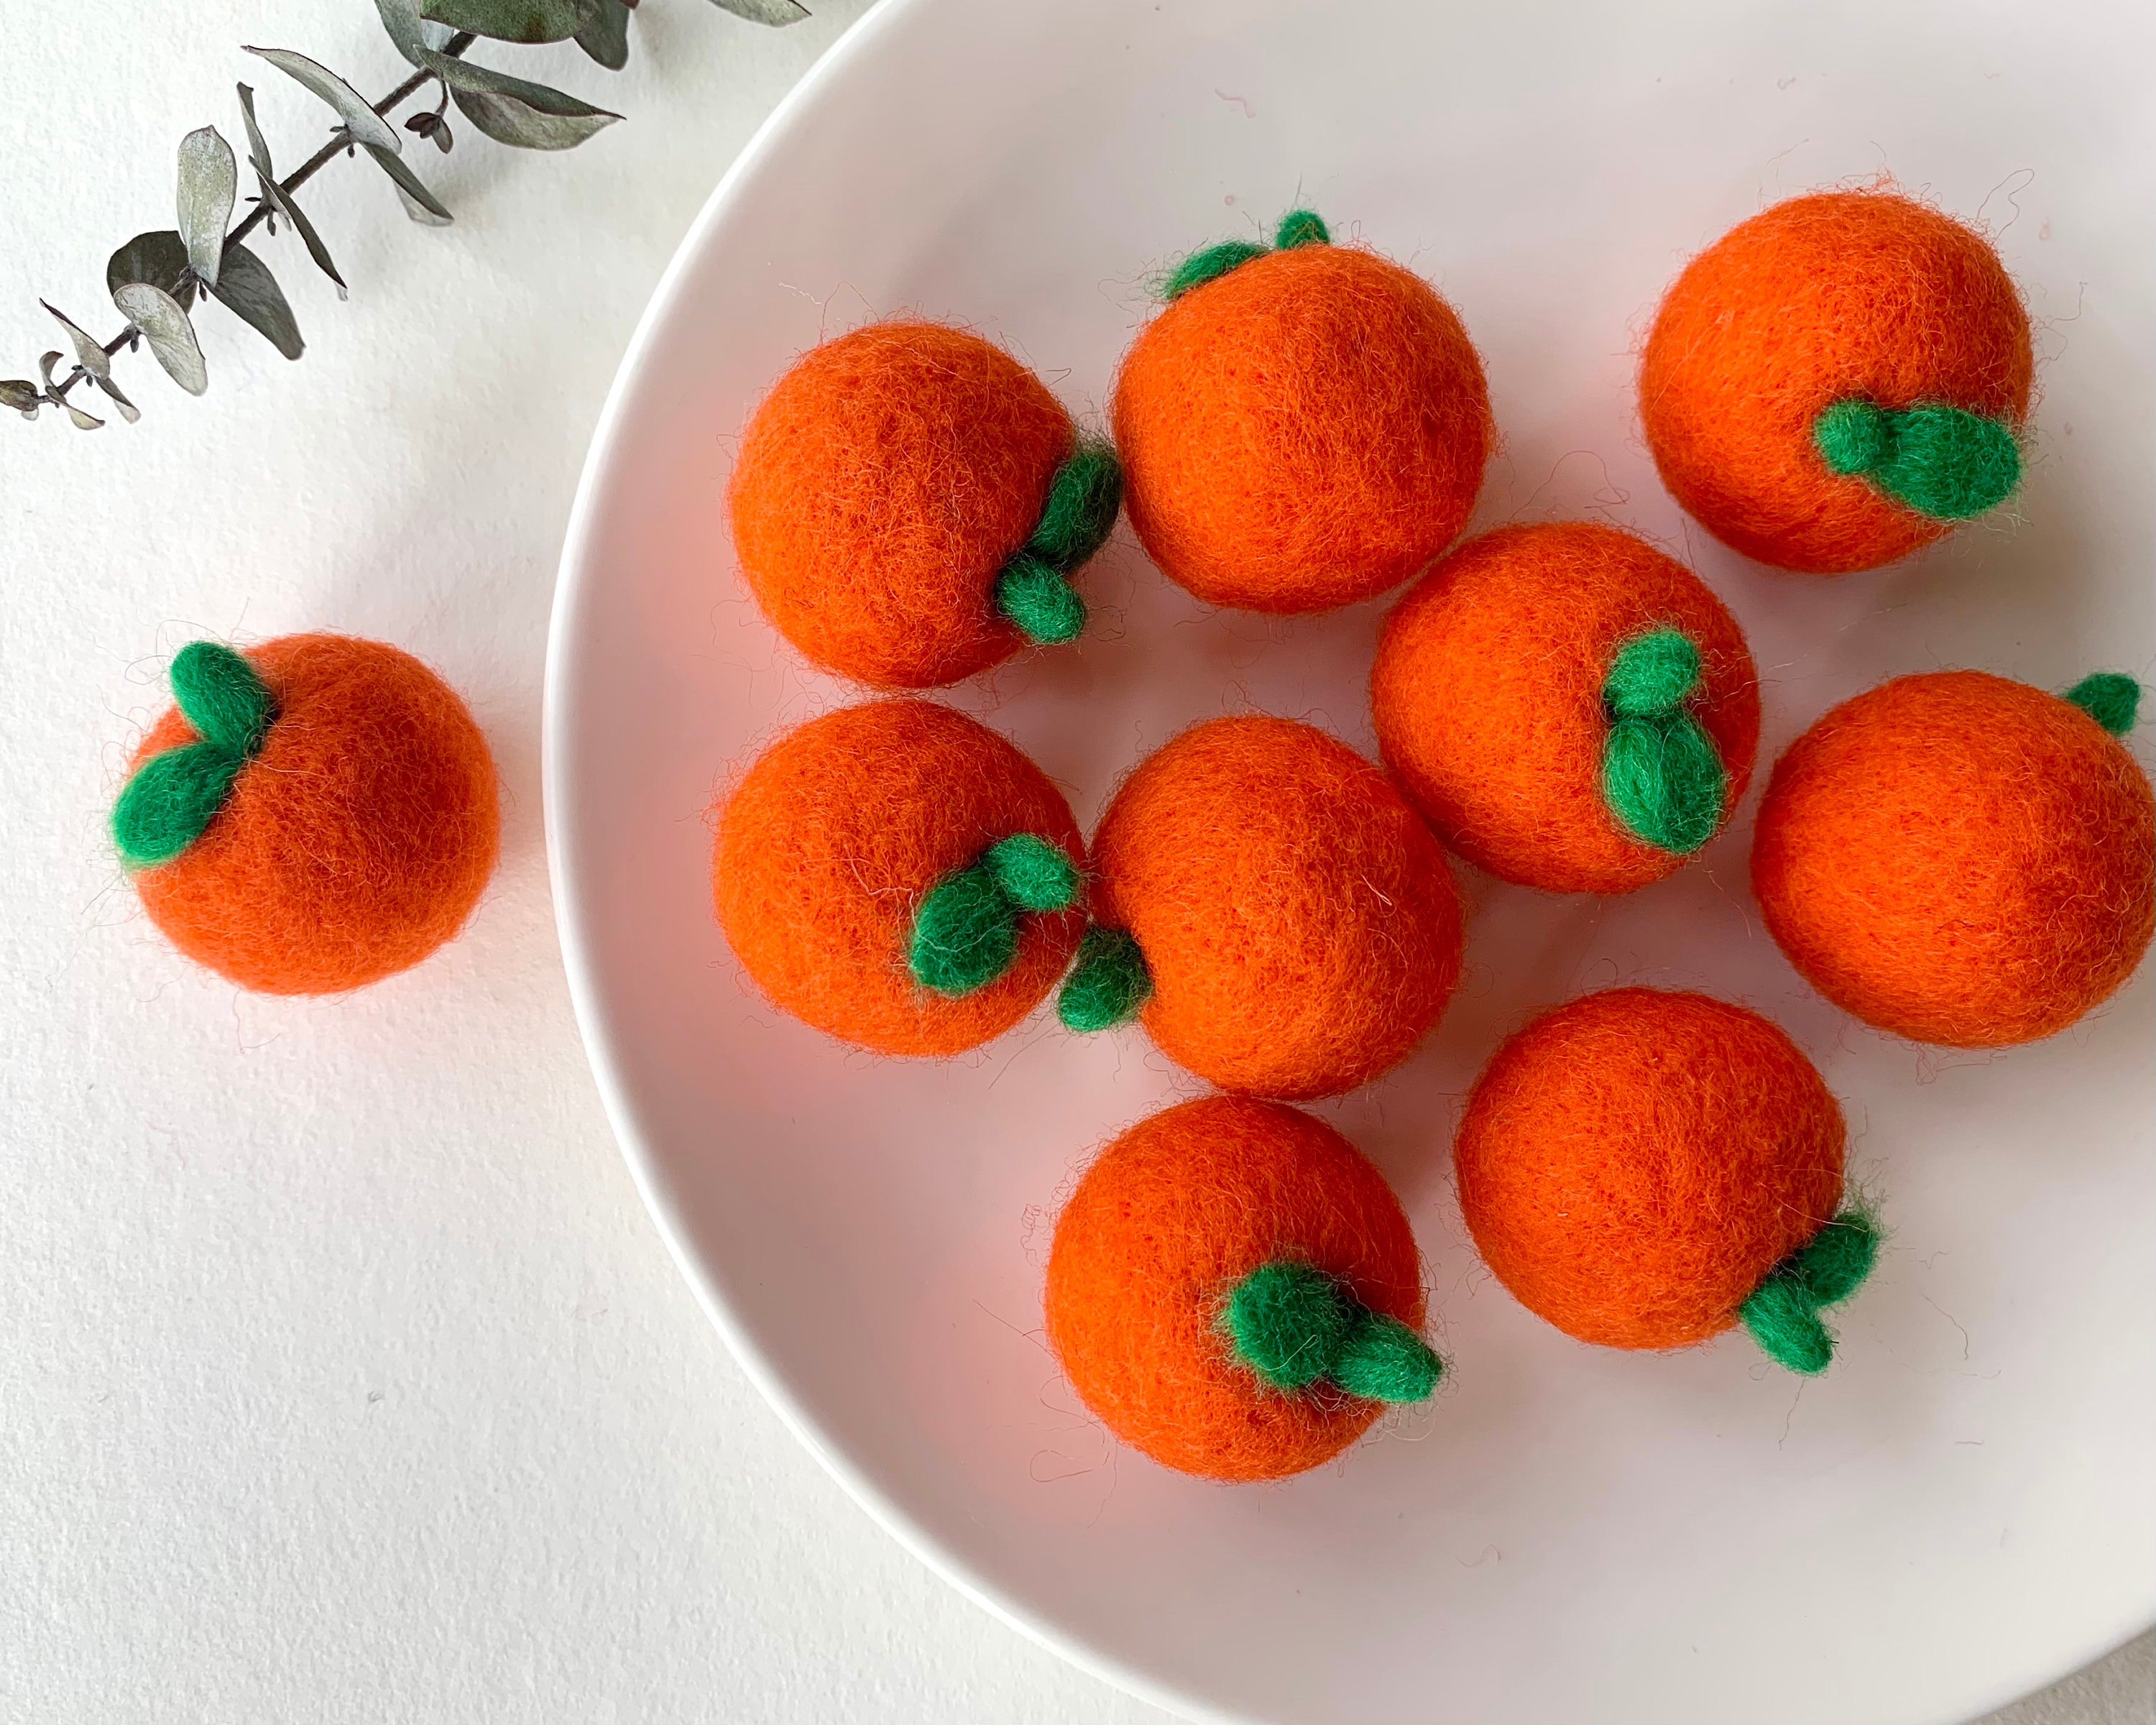 Felted Orange, Wool Felt Orange, Needle Felt Orange, Felted Fruit, Orange  Decor, Orange Ornament, Woolen Orange, Felt Accessory, Home Decor 